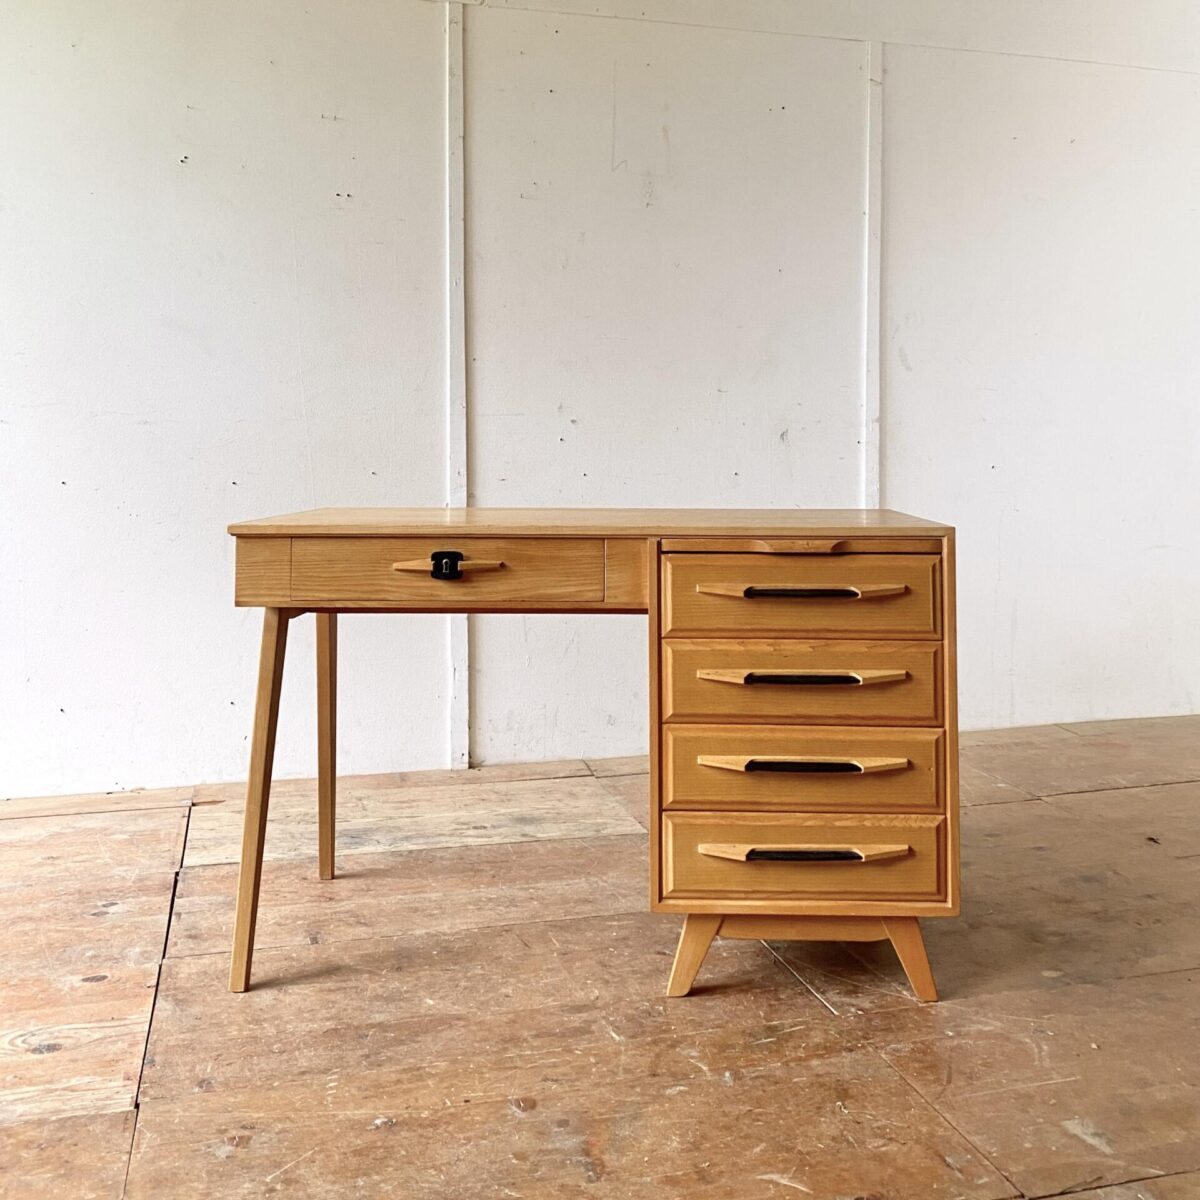 Deuxieme.shop midcentury Schreibtisch Swiss design. Heller Schreibtisch aus Eschenholz von Corta Multiform aus den 50er Jahren. 115x60cm Höhe 74cm. Der Tisch ist in gutem allgemein Zustand, die schwarzen Schubladengriffe sind aus Kunstleder. Der Schlüssel ist leider nicht mehr vorhanden. Der Stuhl ist ebenfalls verfügbar. 